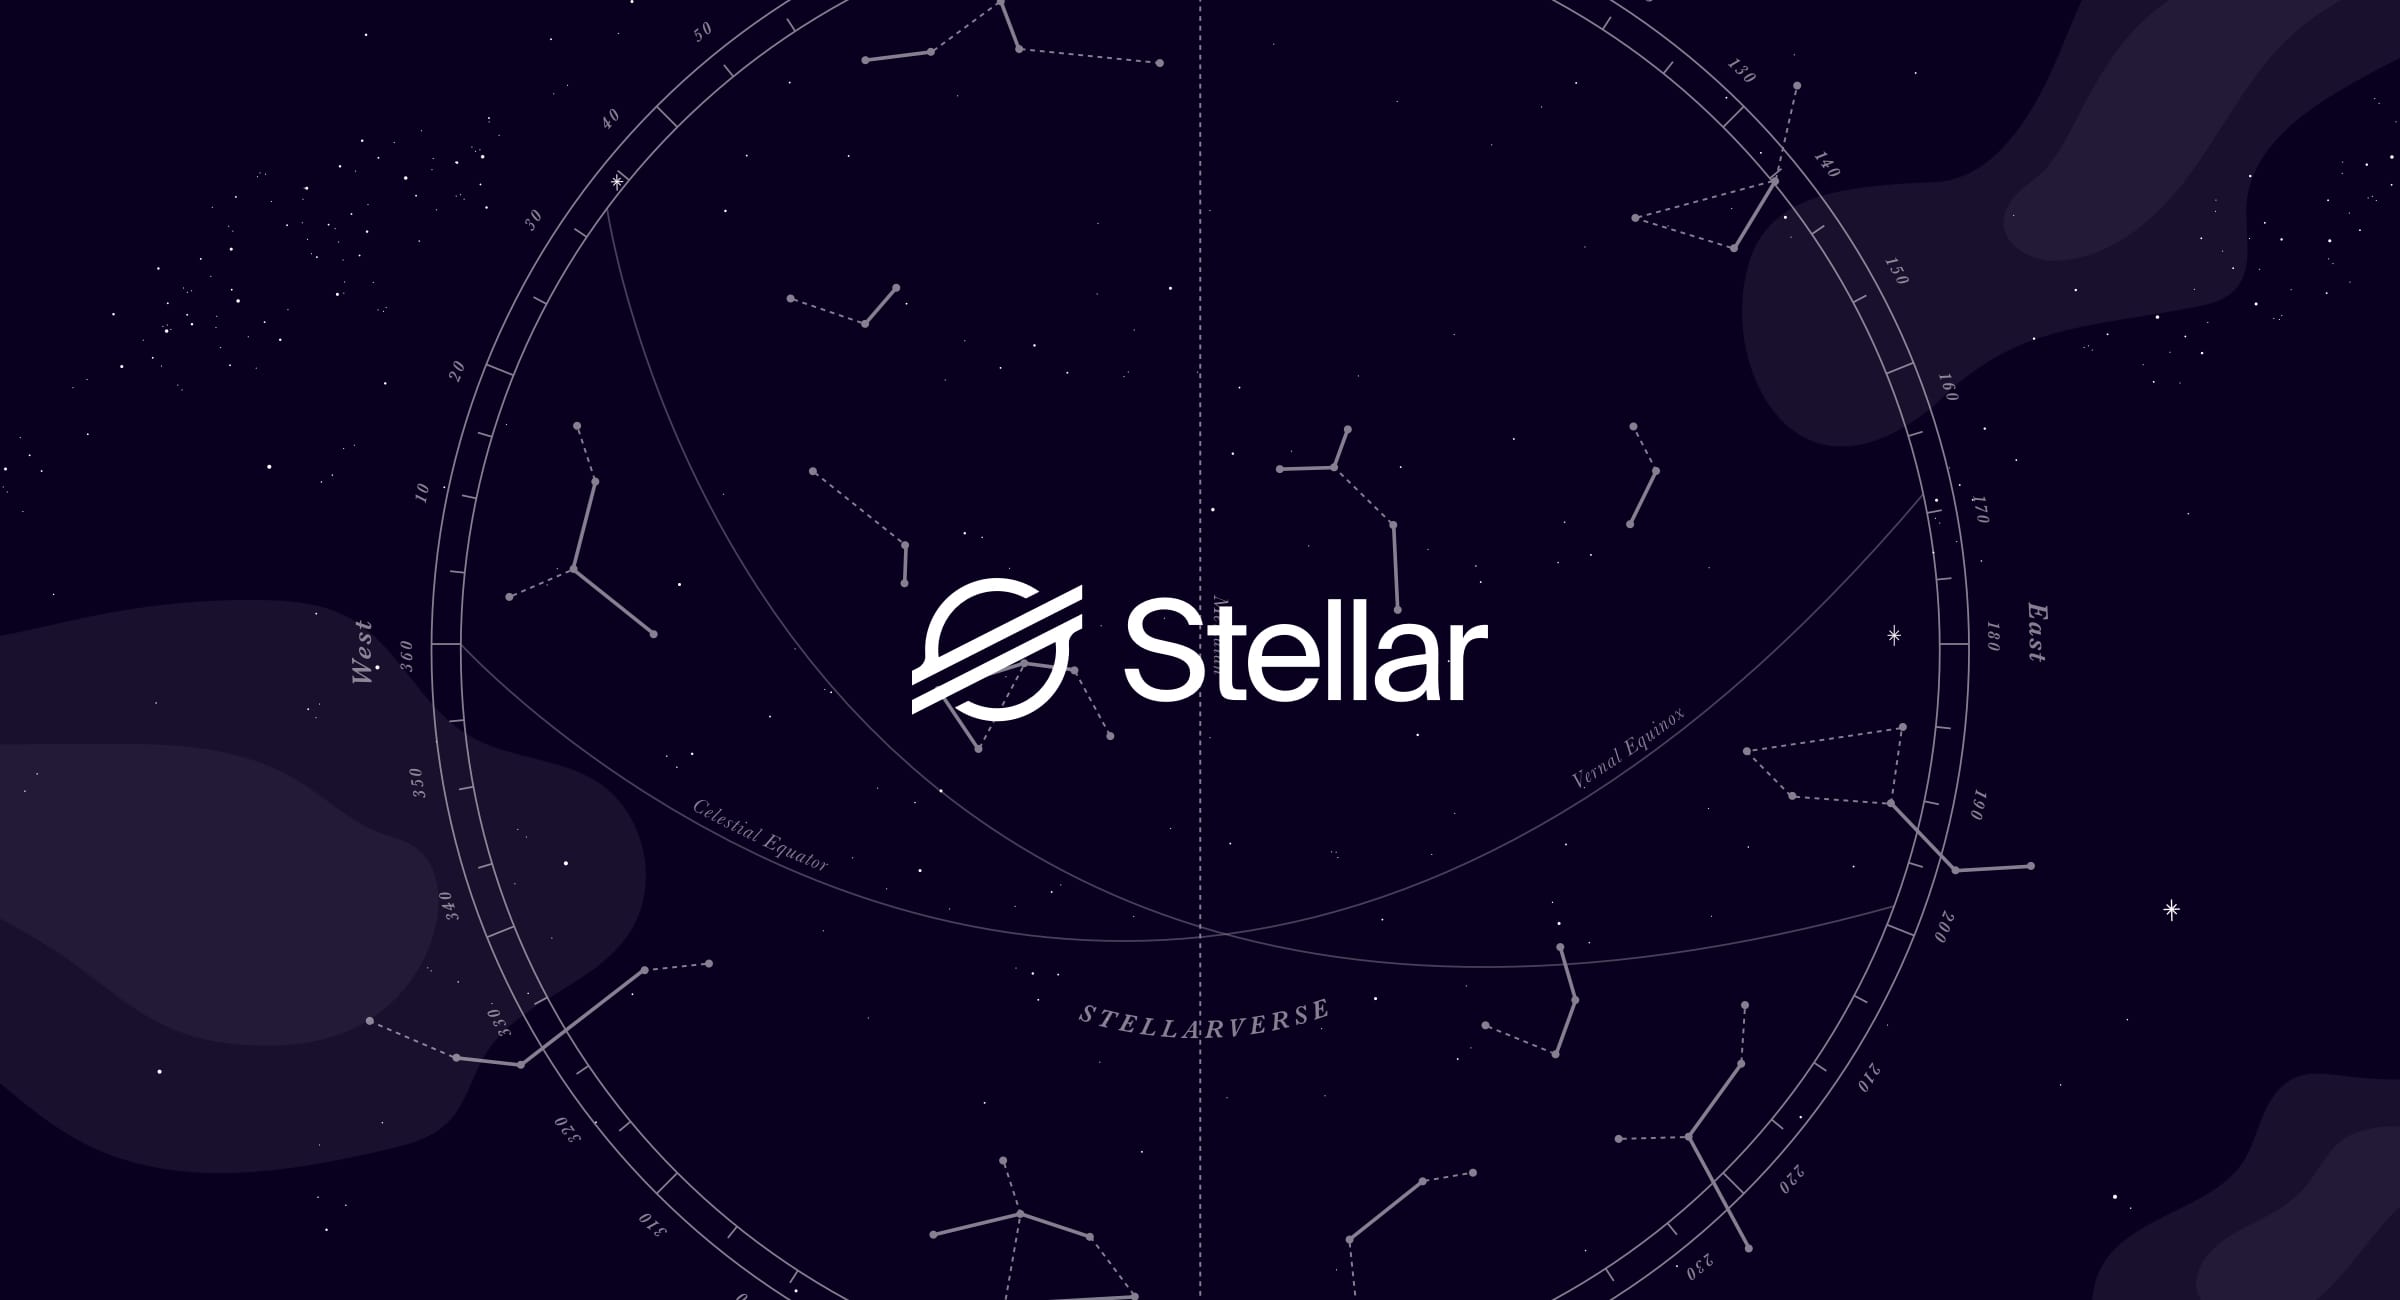 www.stellar.org